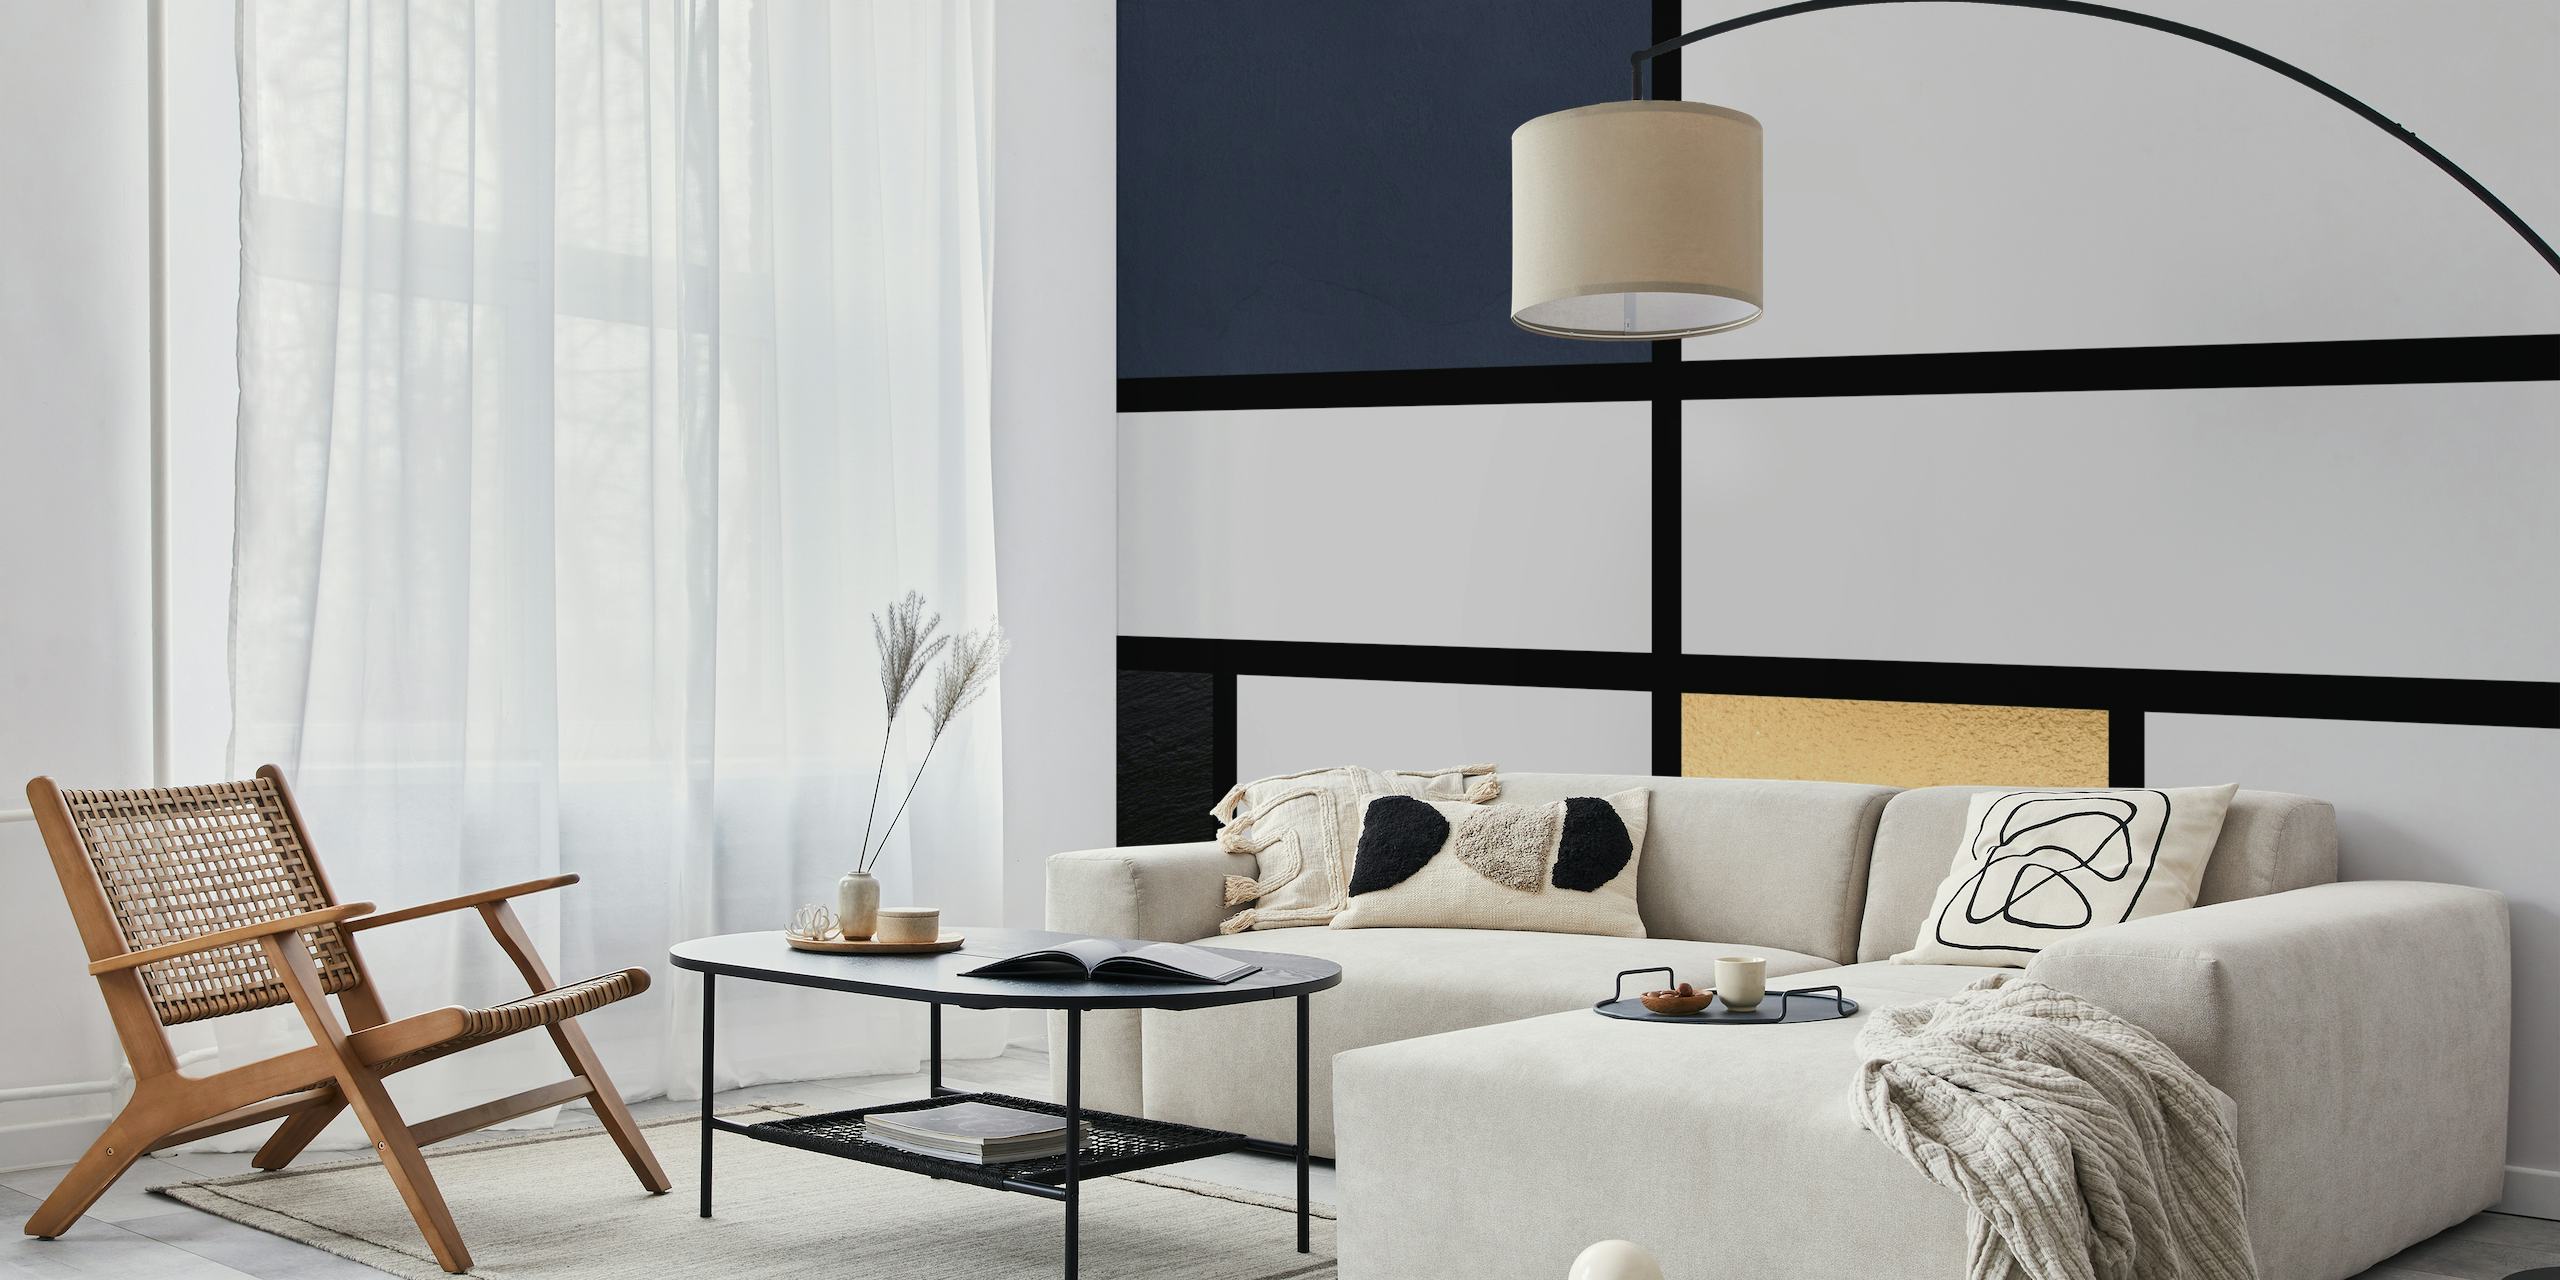 Geometrisches Wandbild mit nachtblauen, sanften Grau- und Goldakzenten in minimalistischem Design